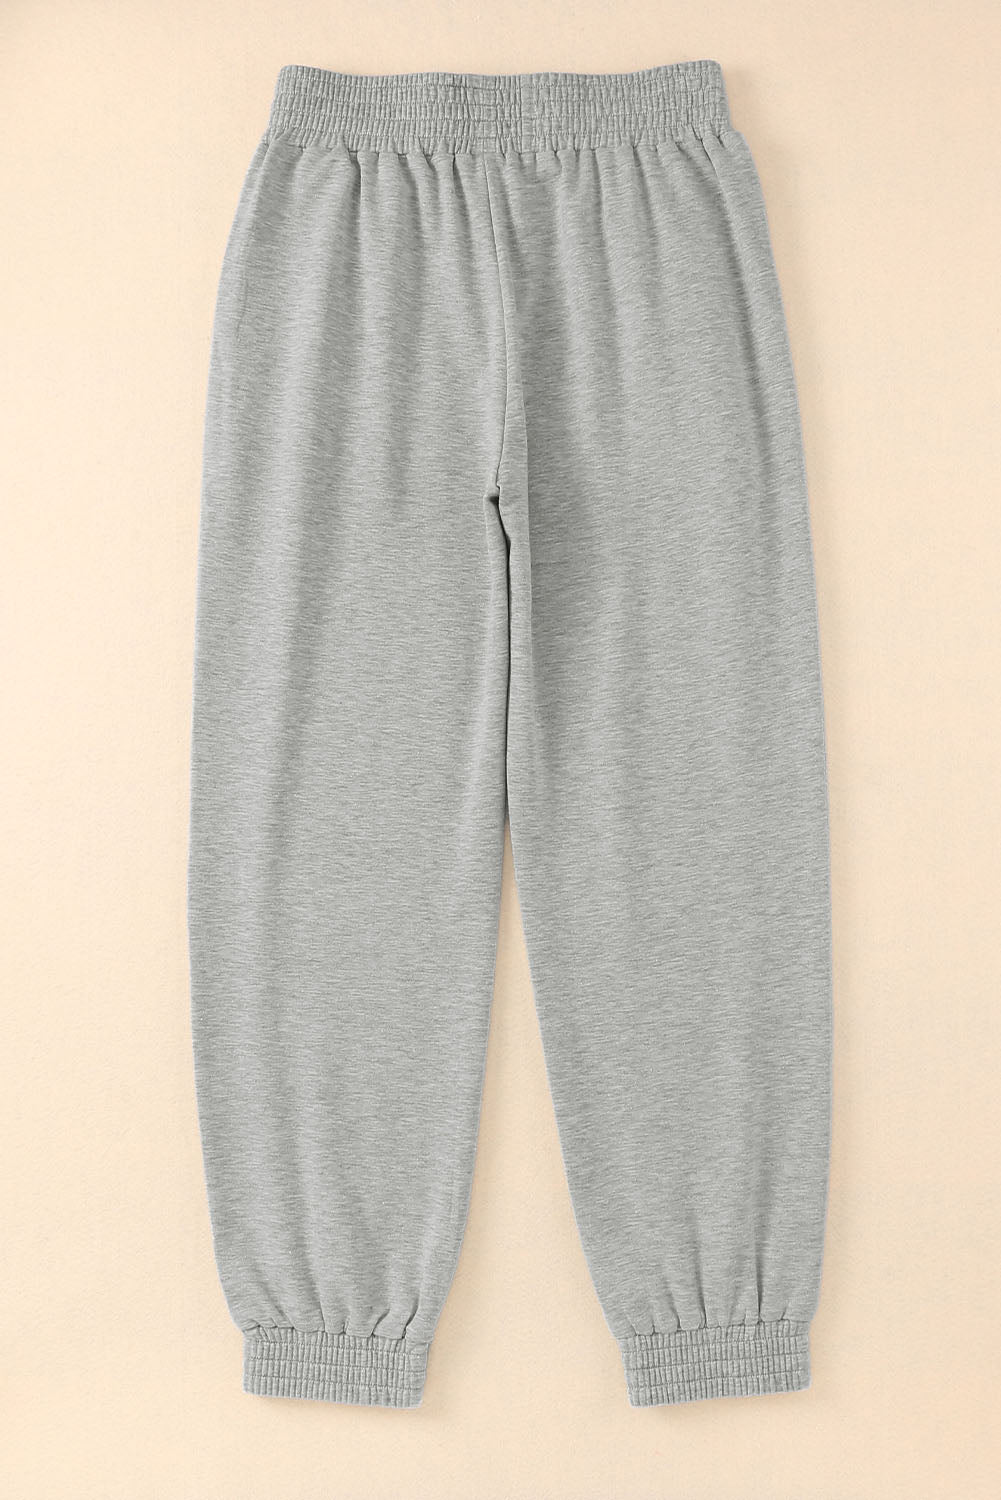 Grey Smocked Jogger Pants